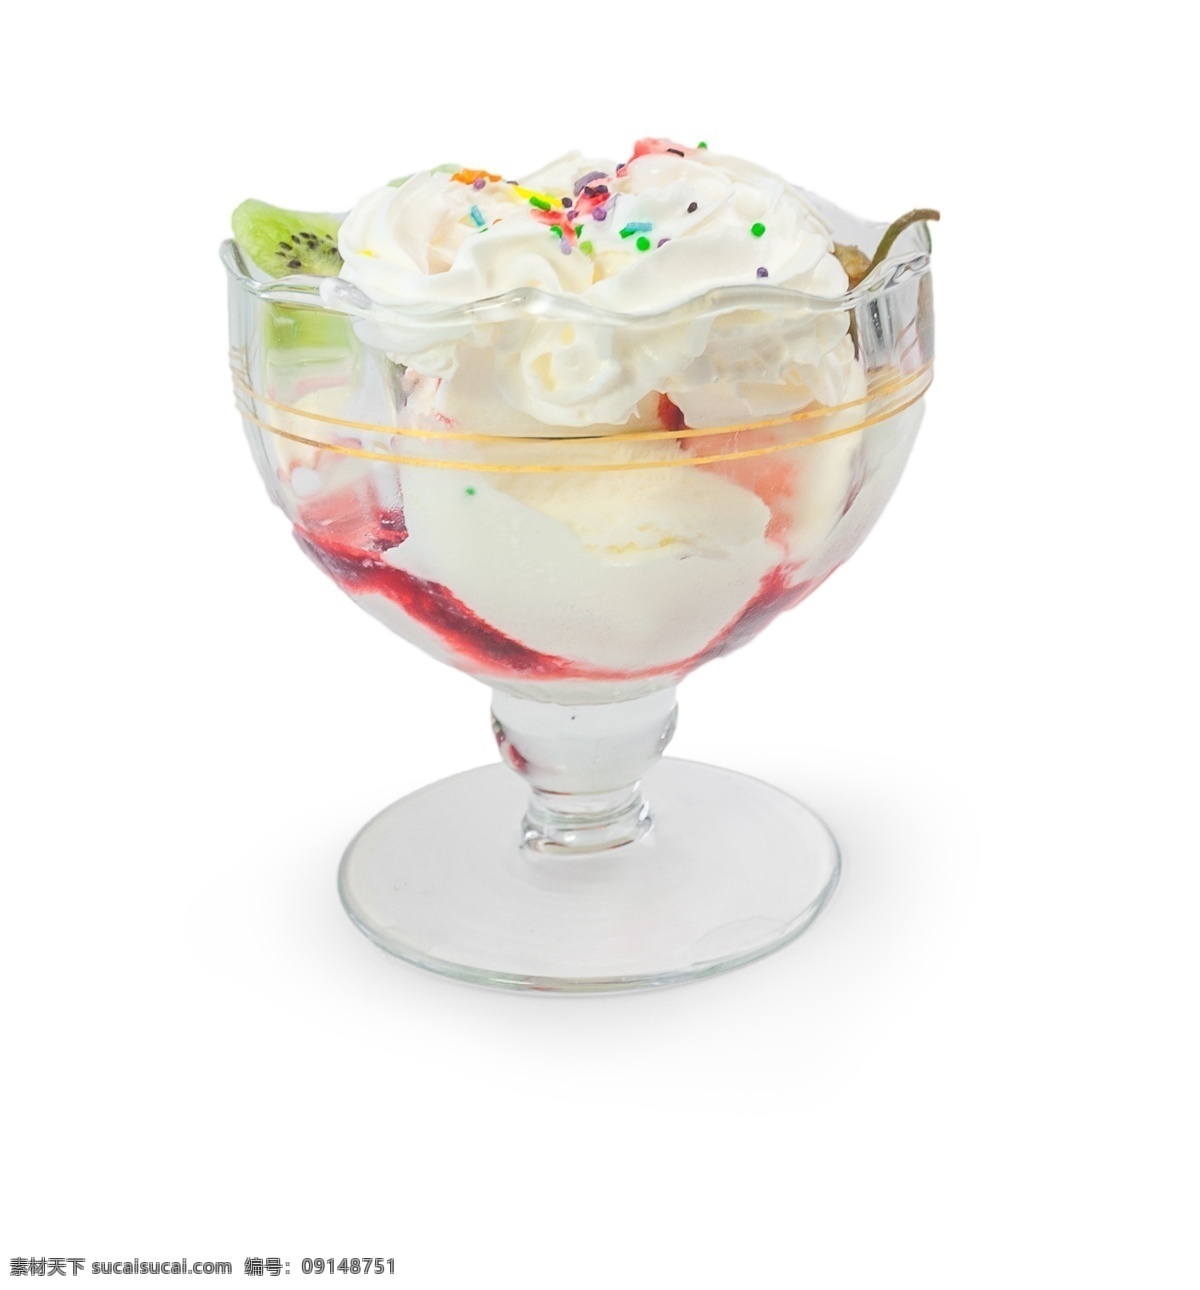 侧视图 甜品 食物 雪糕 杯 源文件 奶油 水果 奇异果 玻璃杯 装饰图案